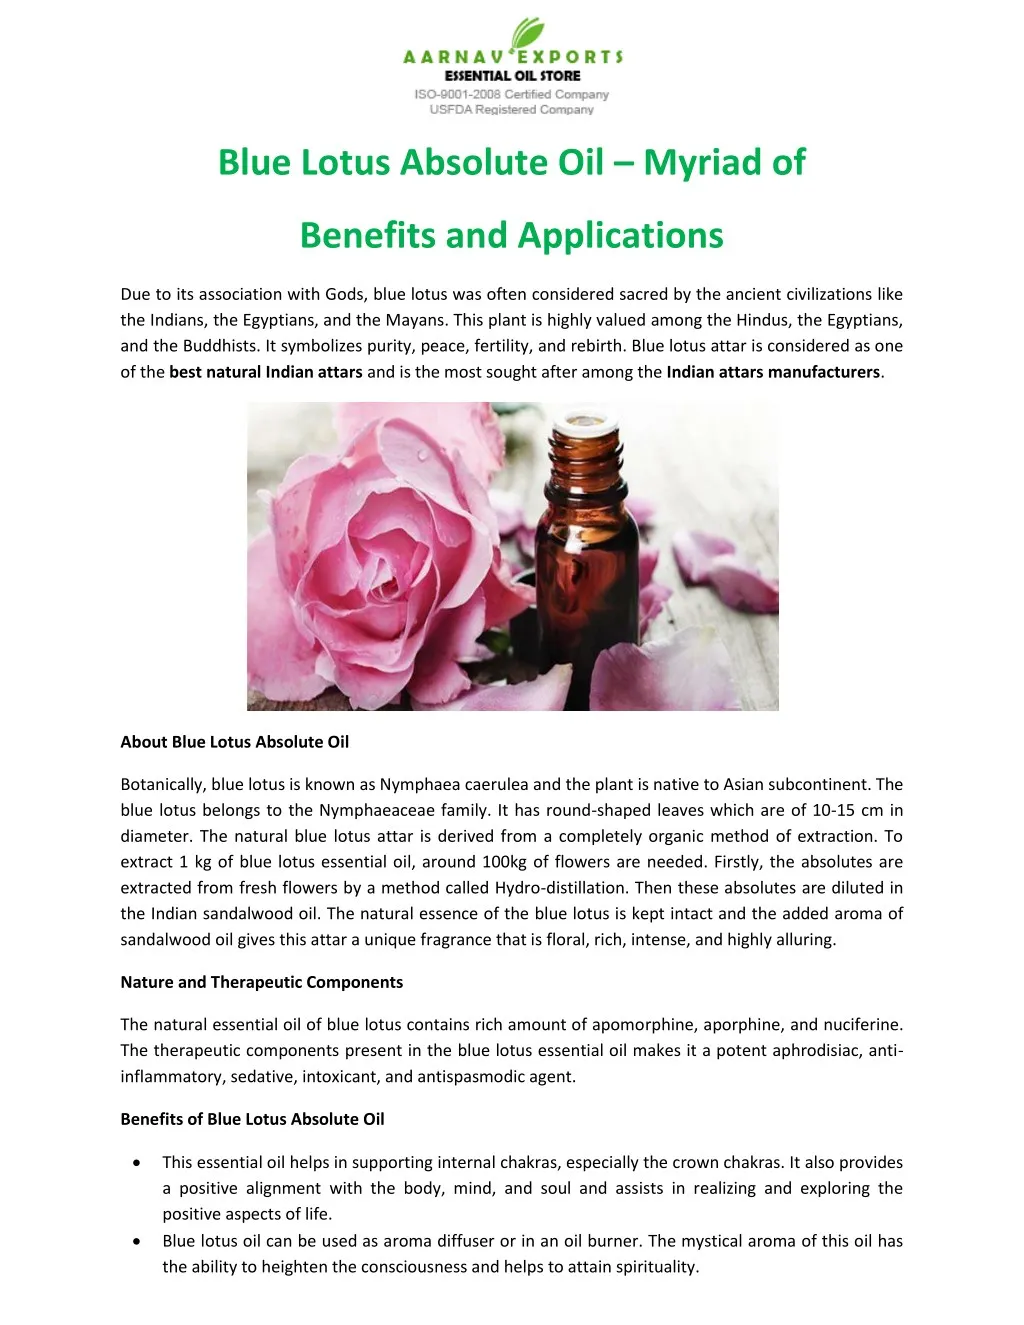 blue lotus absolute oil myriad of